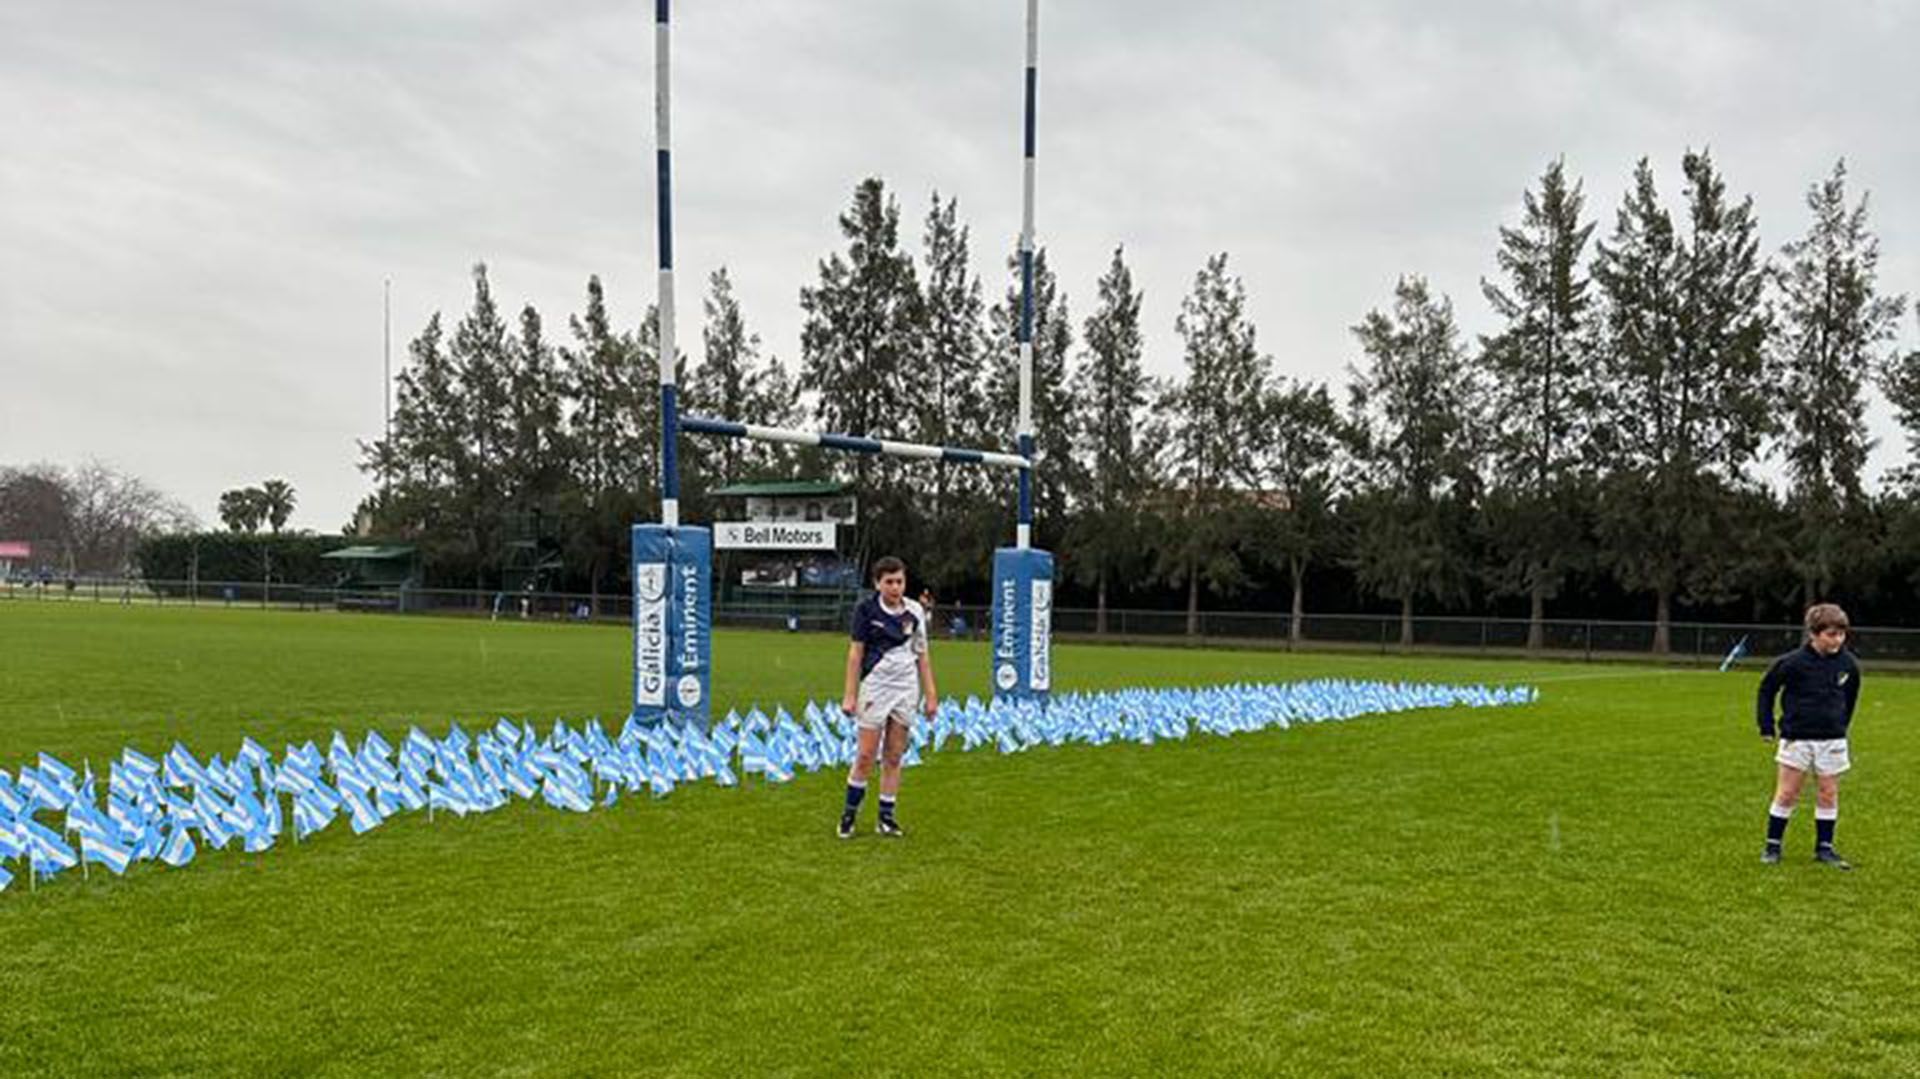 Sobre el césped, antes del juego, se colocaron 649 banderillas nacionales, cada una de las cuales tenía el nombre de los argentinos caídos en combate